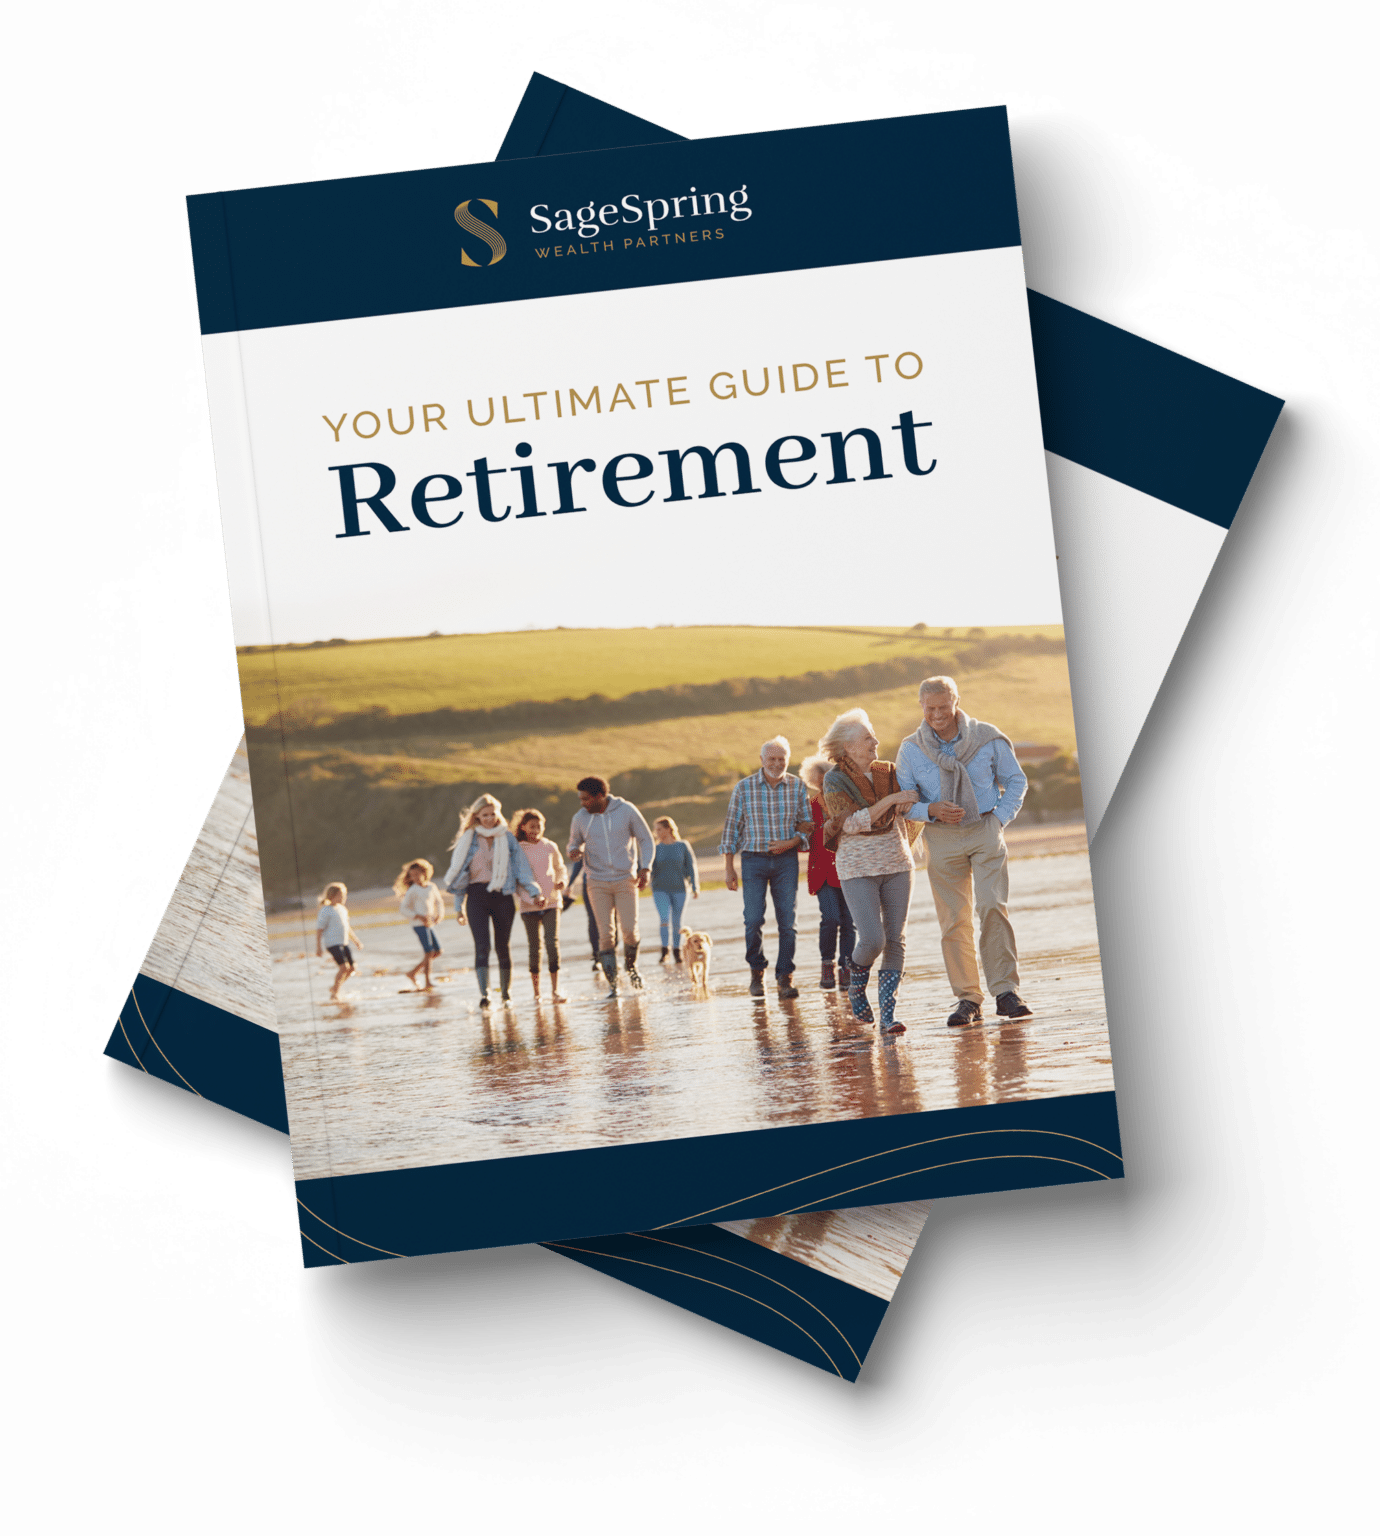 sagespring retirement guide mockup